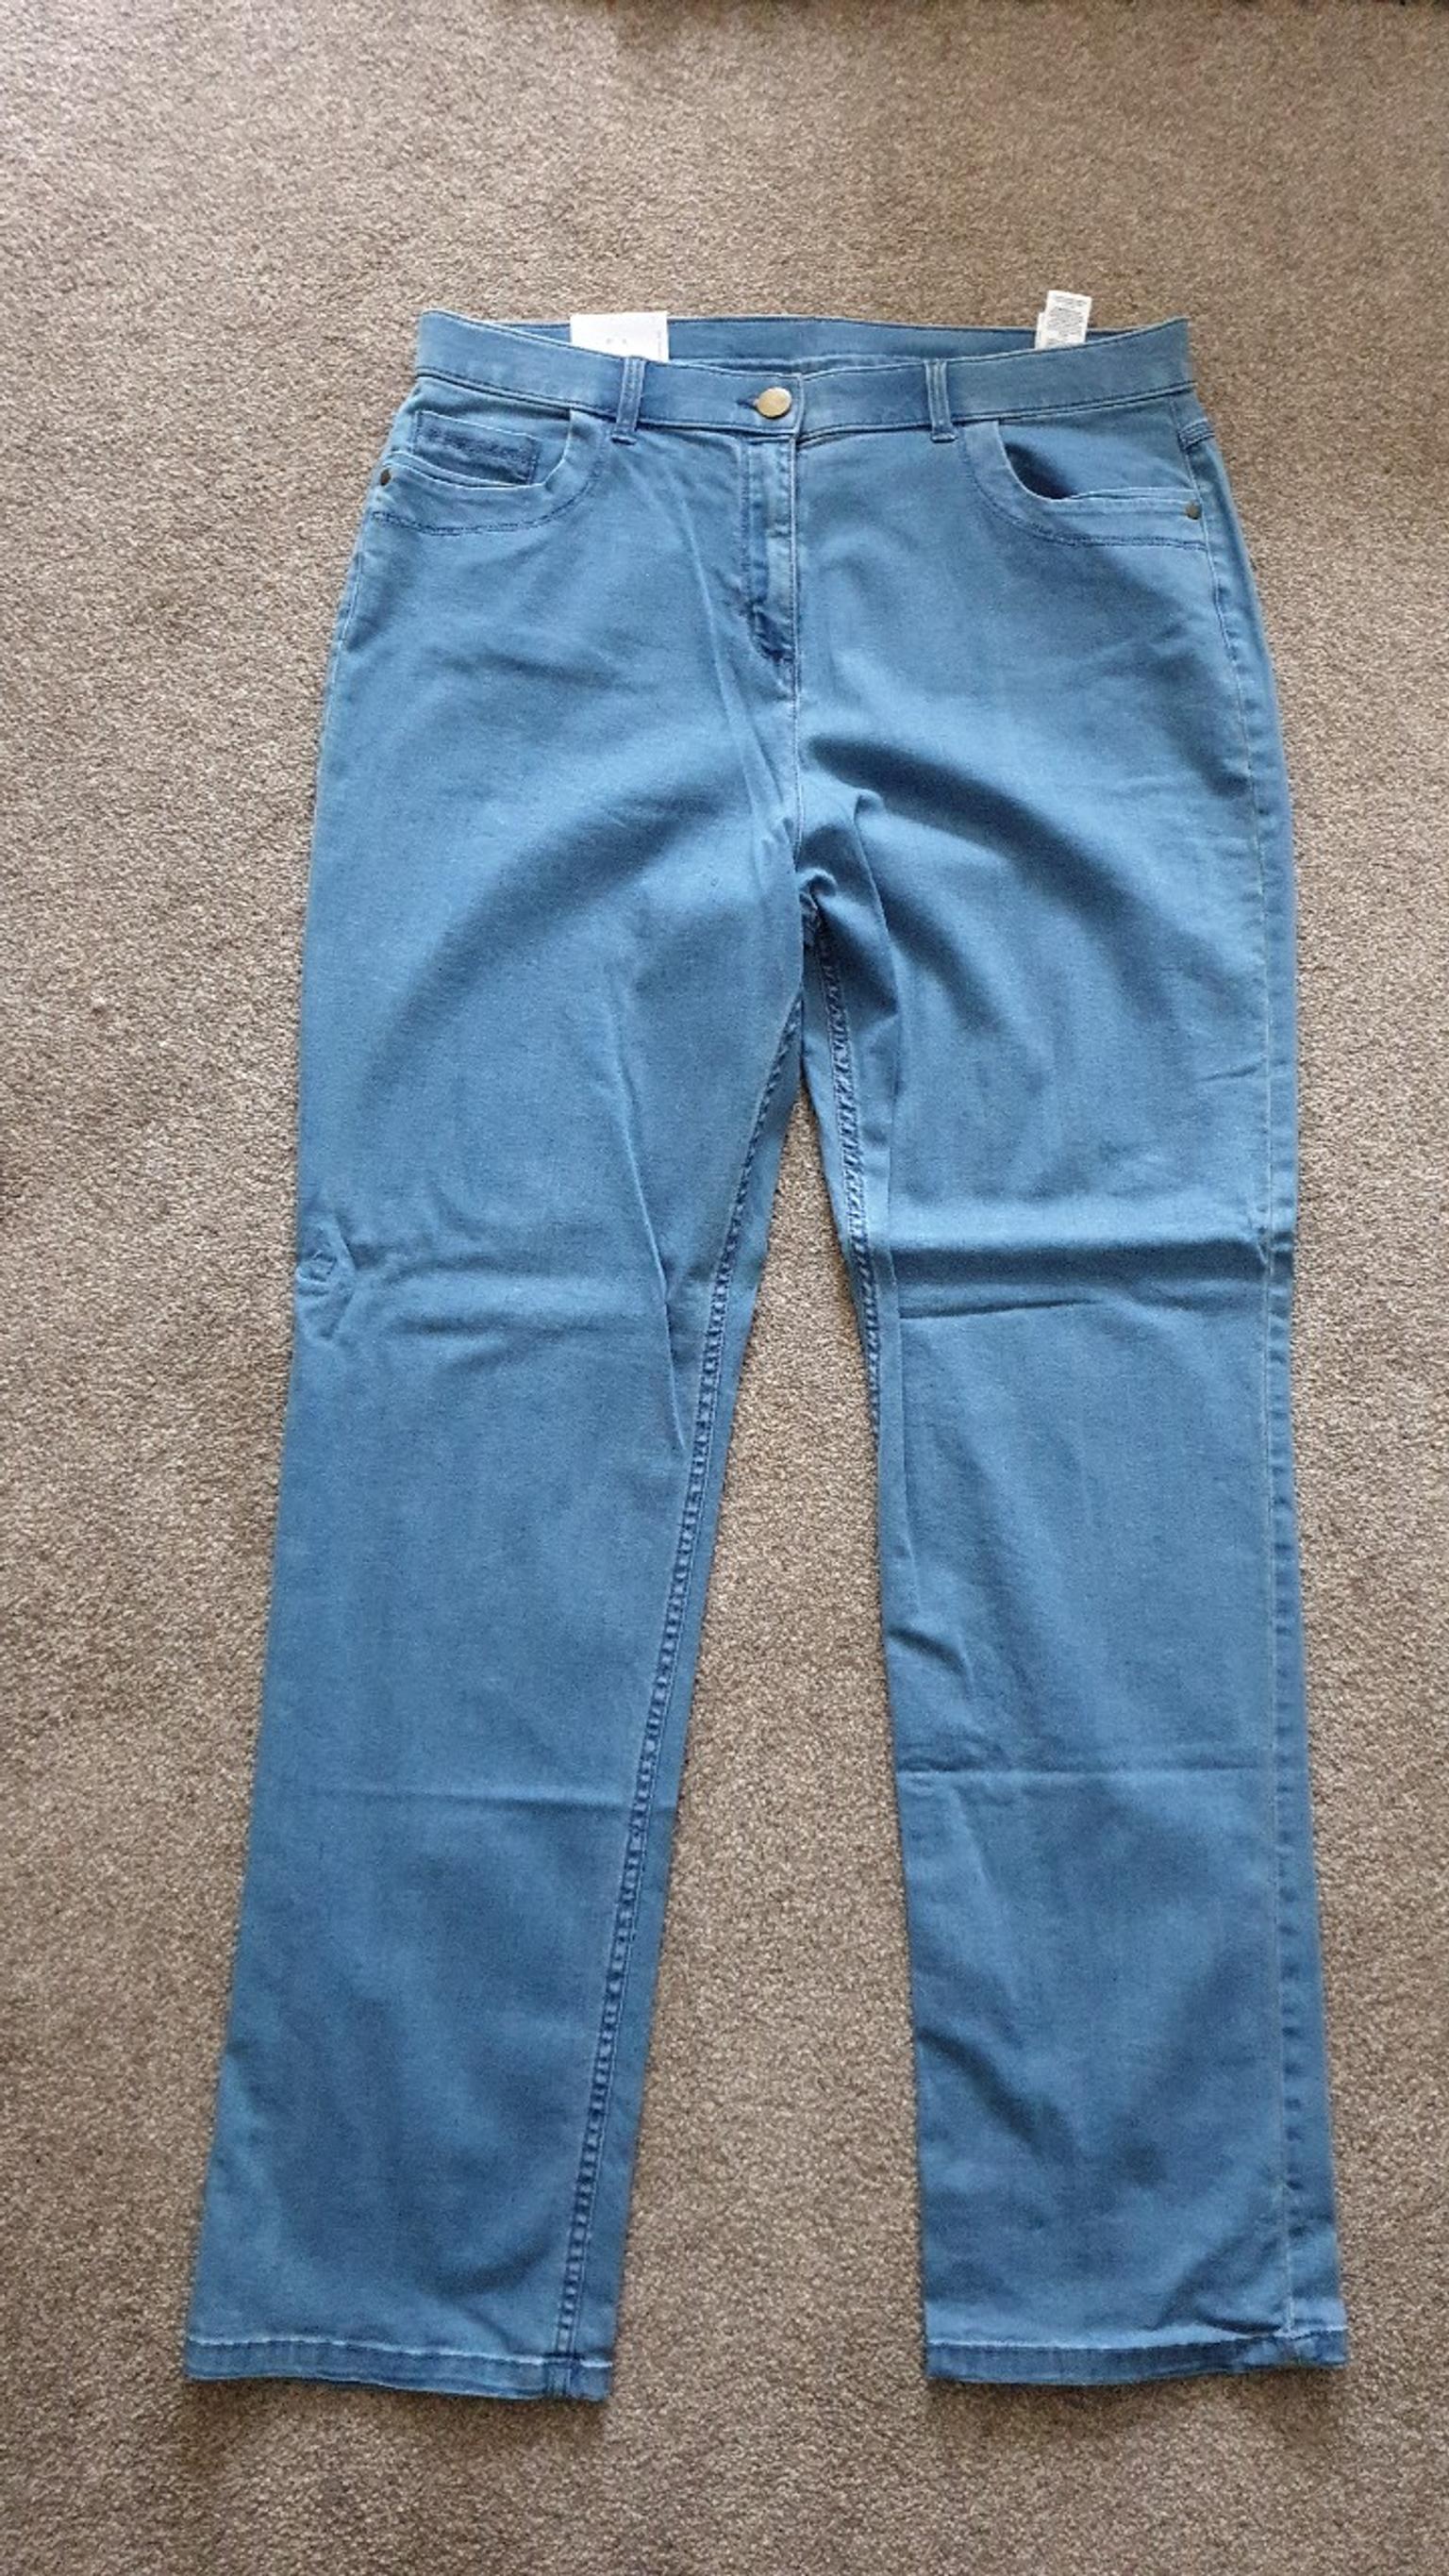 m&s ladies classic jeans